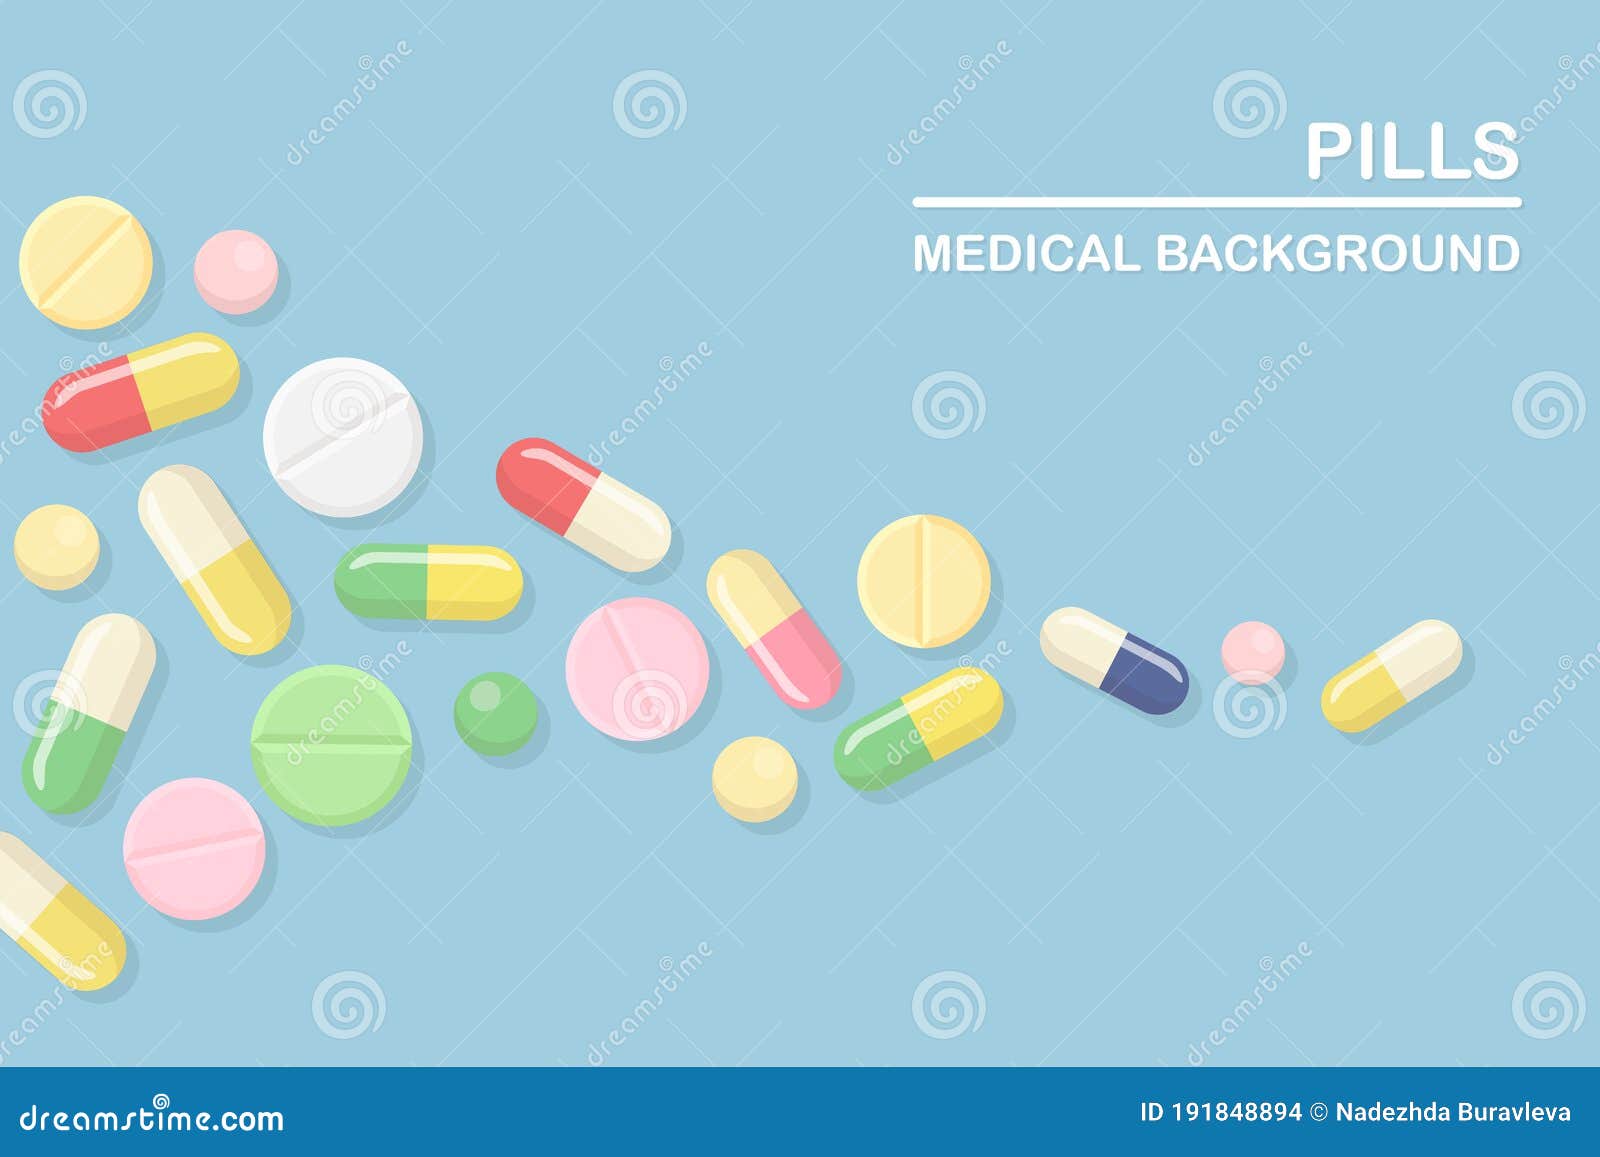 conjunto de personagens de remédios, drogas ou medicamentos de